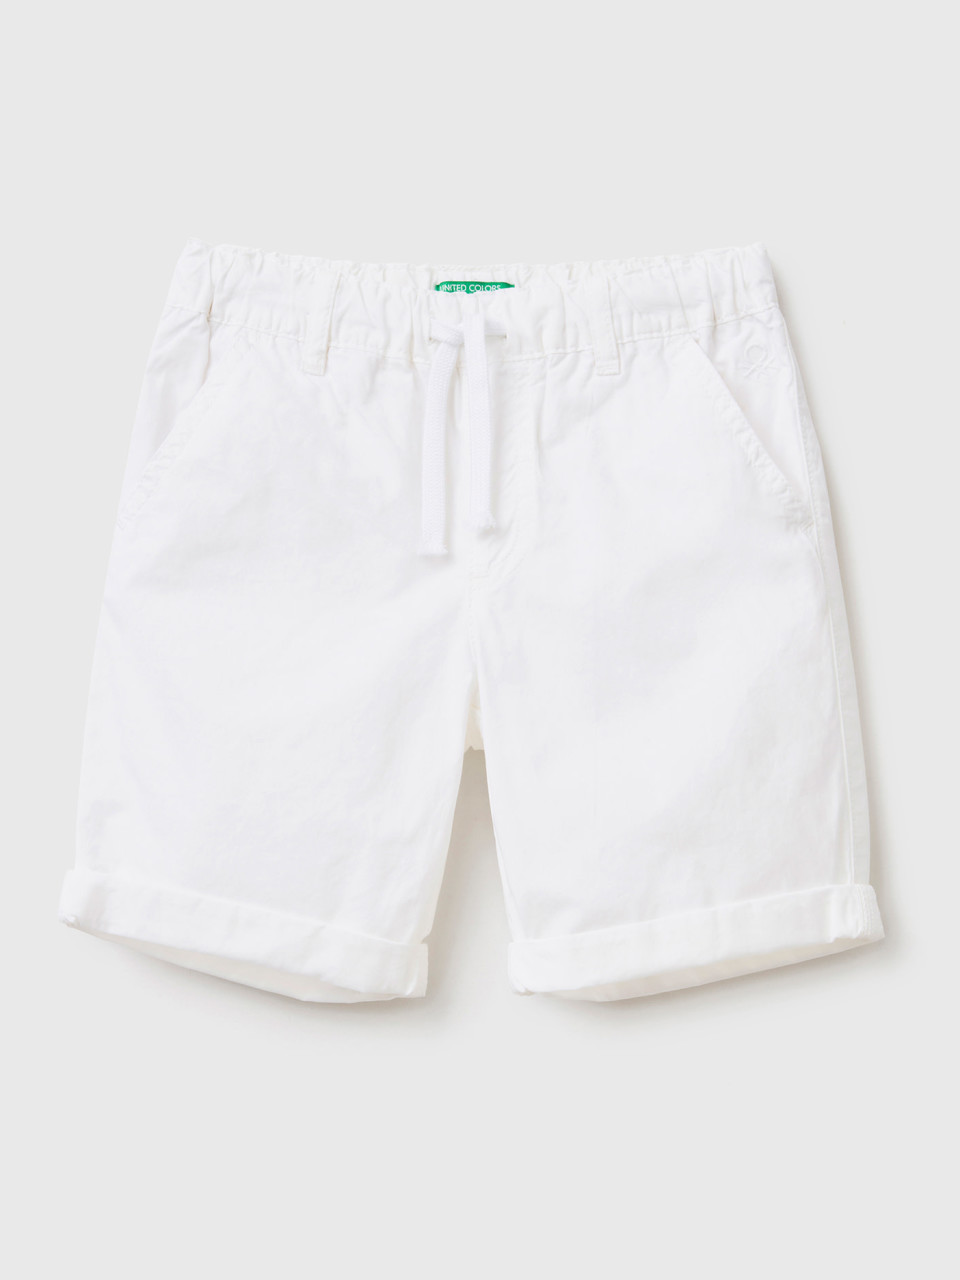 Benetton, 100% Cotton Shorts With Drawstring, White, Kids